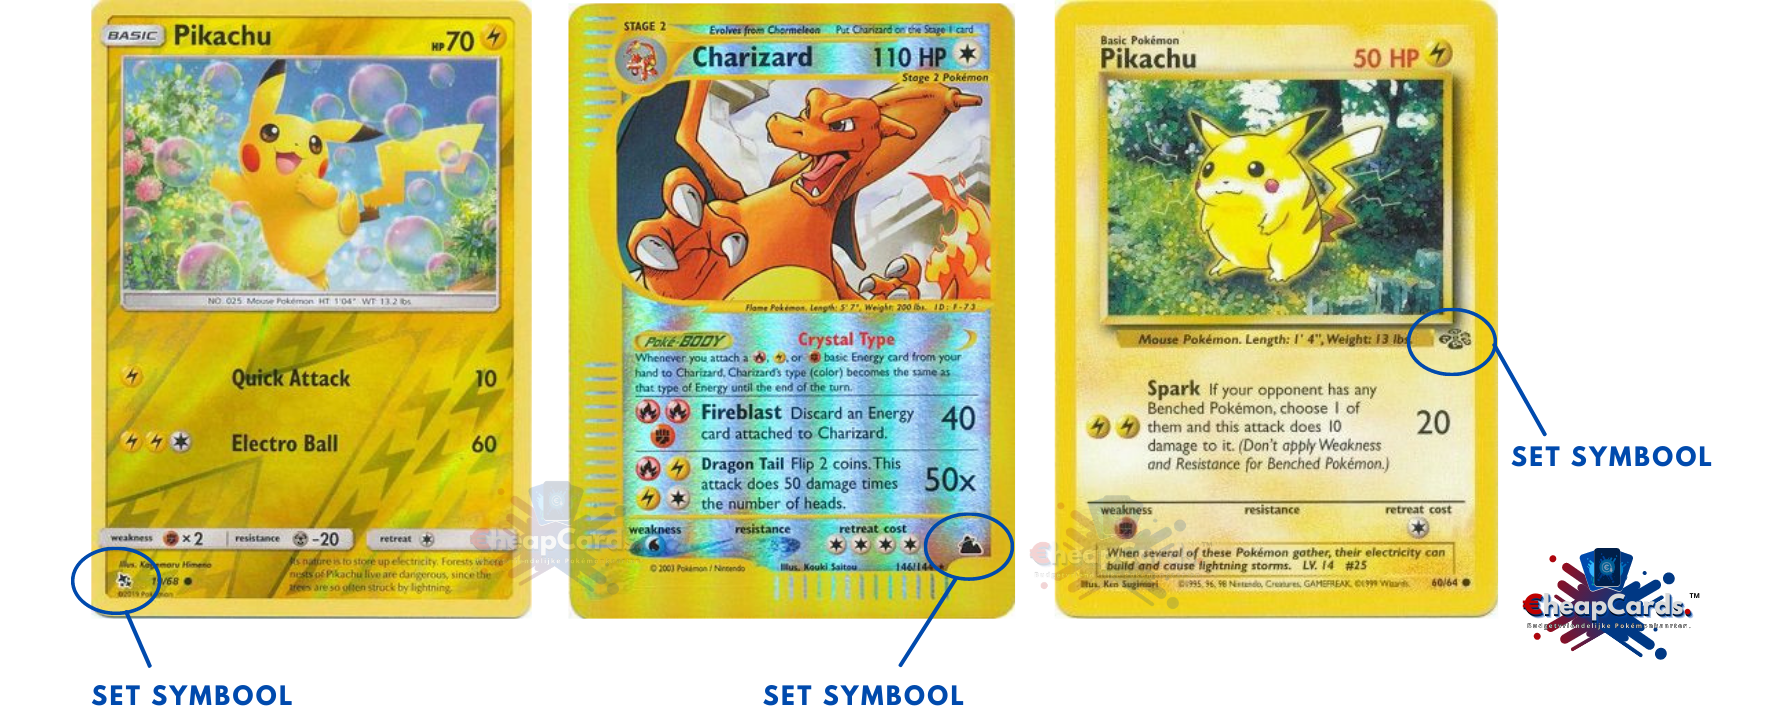 Preek strottenhoofd mythologie Uit welke serie is mijn Pokémon kaart? – cheapcards.nl